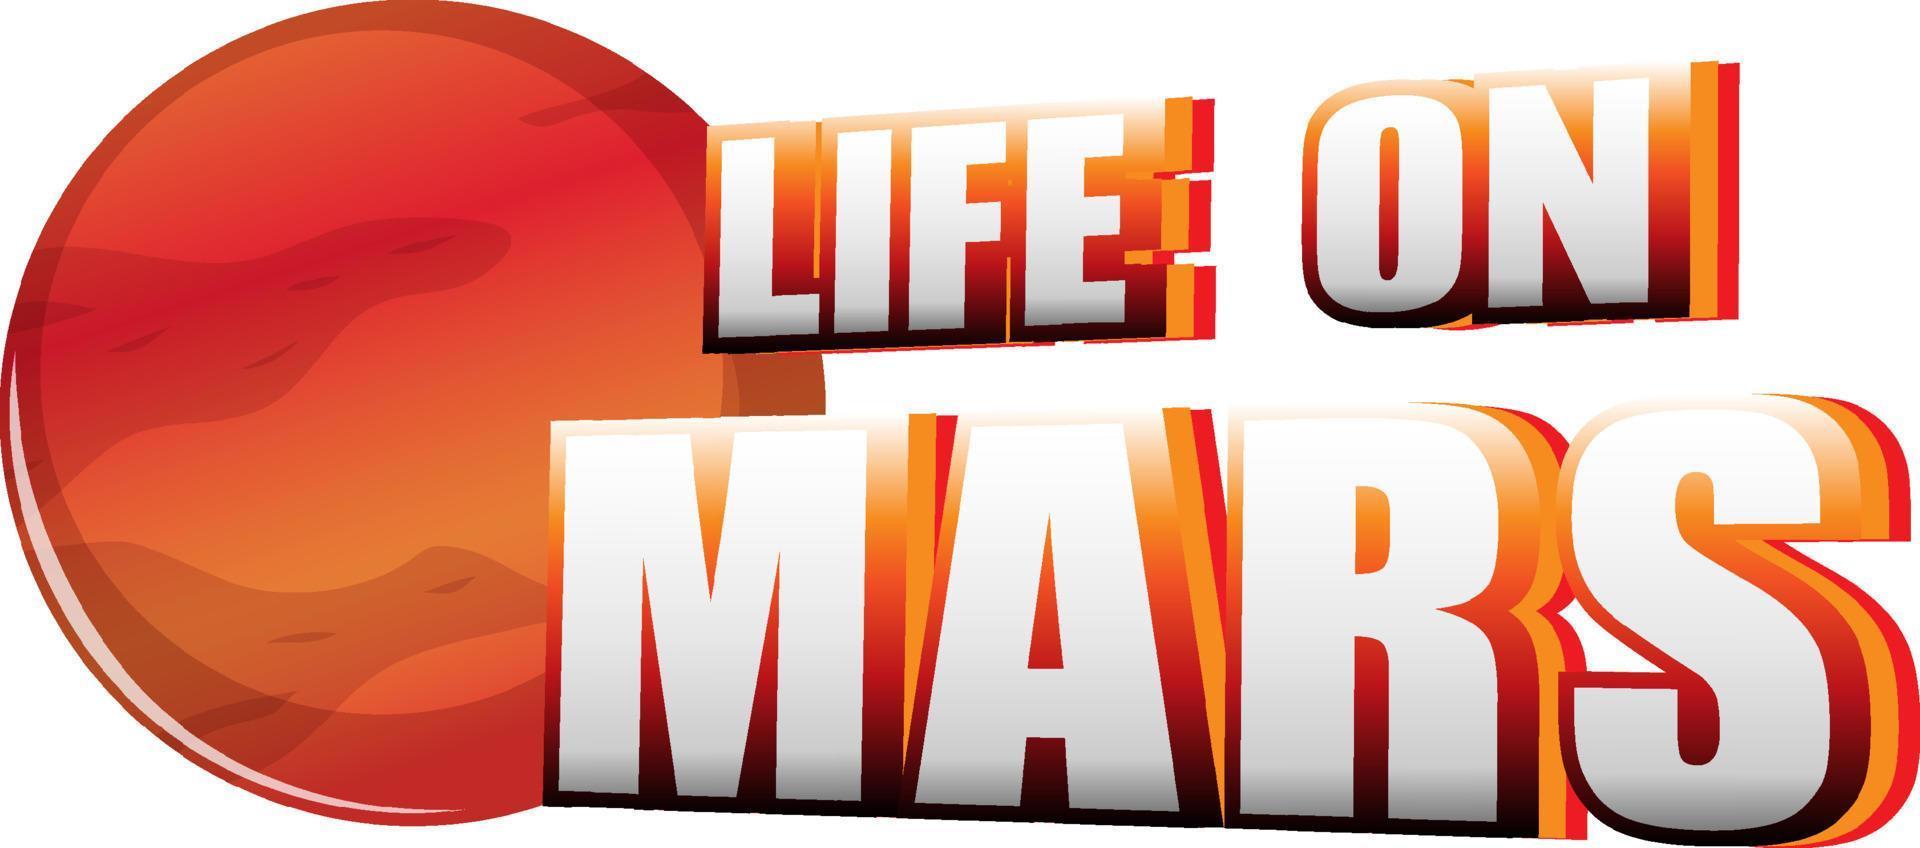 Leben auf dem Mars-Wort-Logo-Design mit Raumschiff vektor